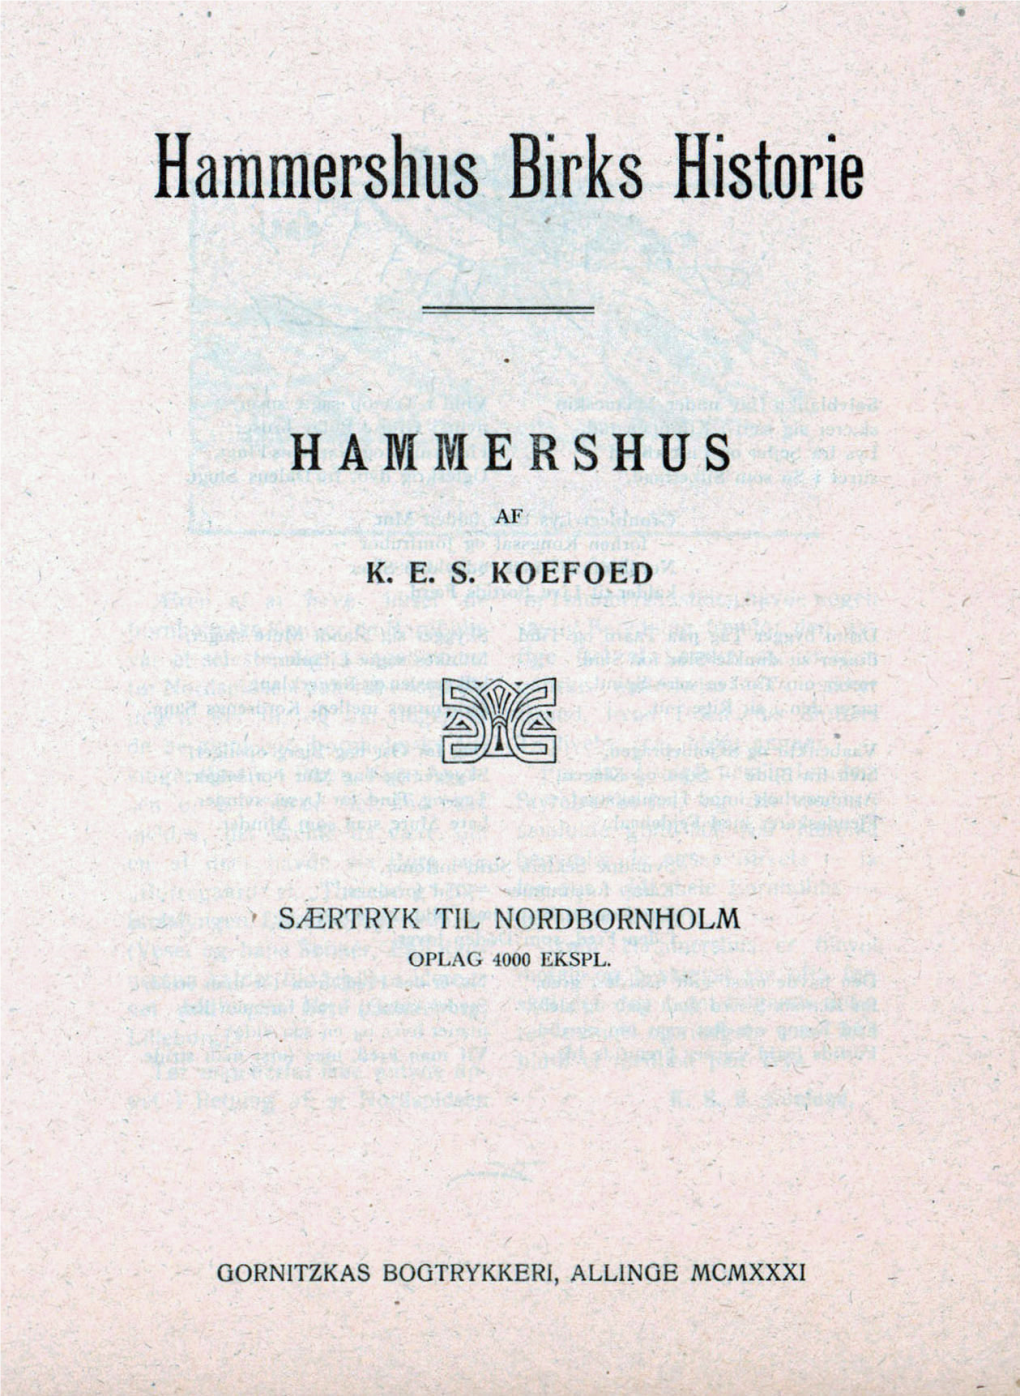 Hammershus Birks Historie